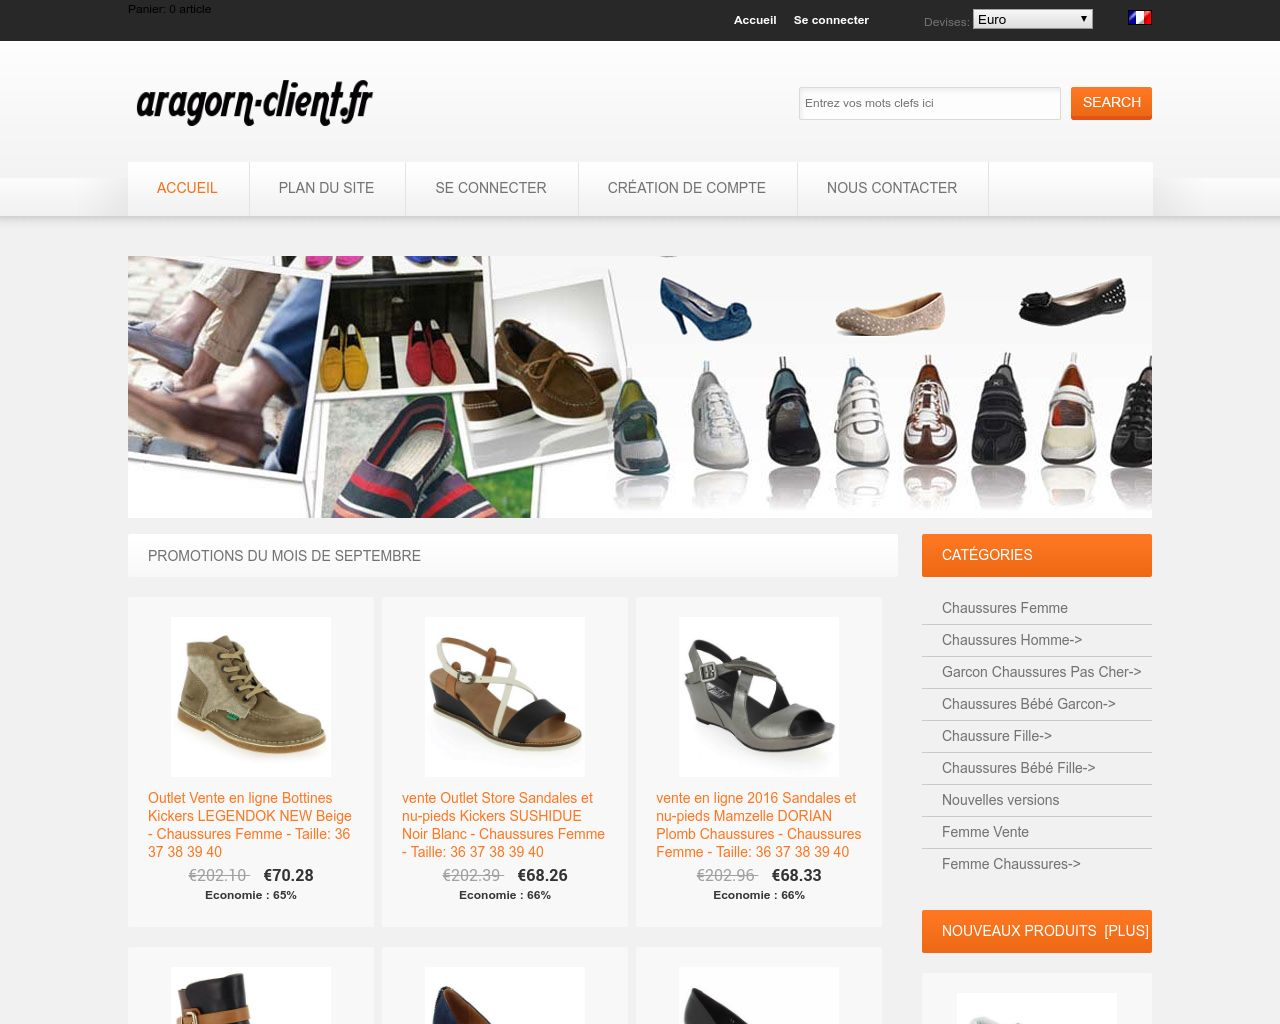 Site de l'image aragorn-client.fr en 1280x1024